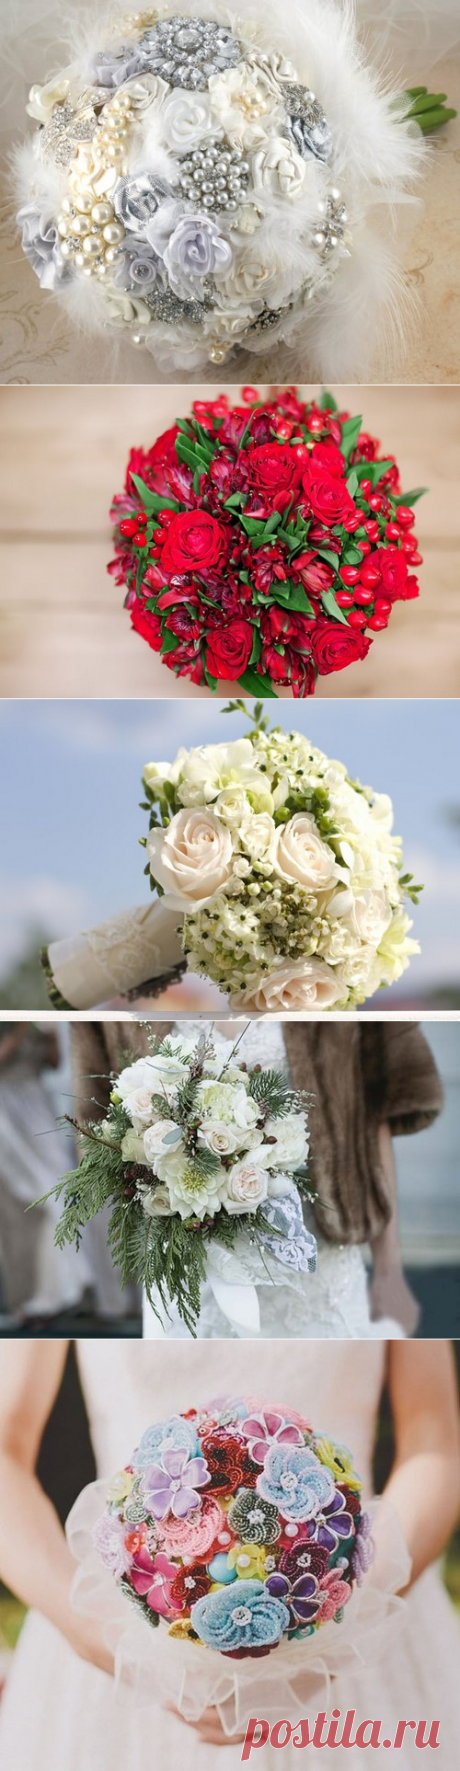 Какой свадебный букет сделать - фото идеи, красивые свадебные букеты для невесты - примеры